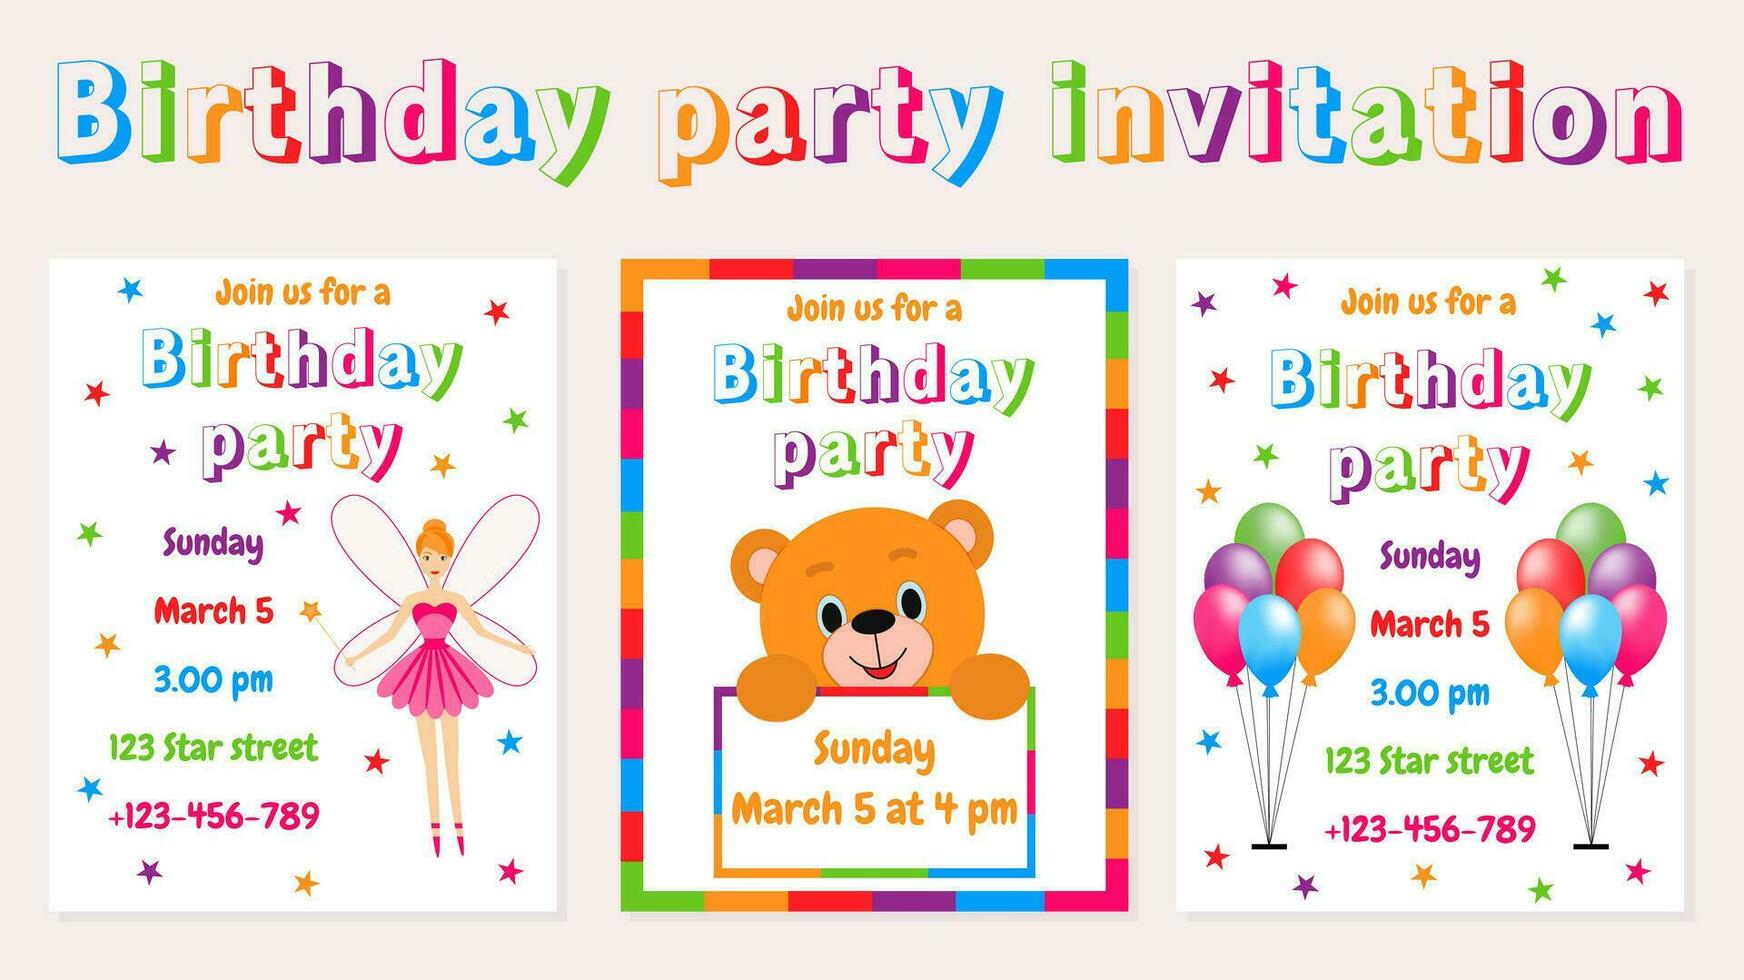 Vektor Illustration. Sammlung von Einladung Karten zum Kinder- Geburtstag. mehrfarbig Luftballons, Teddy tragen, Fee